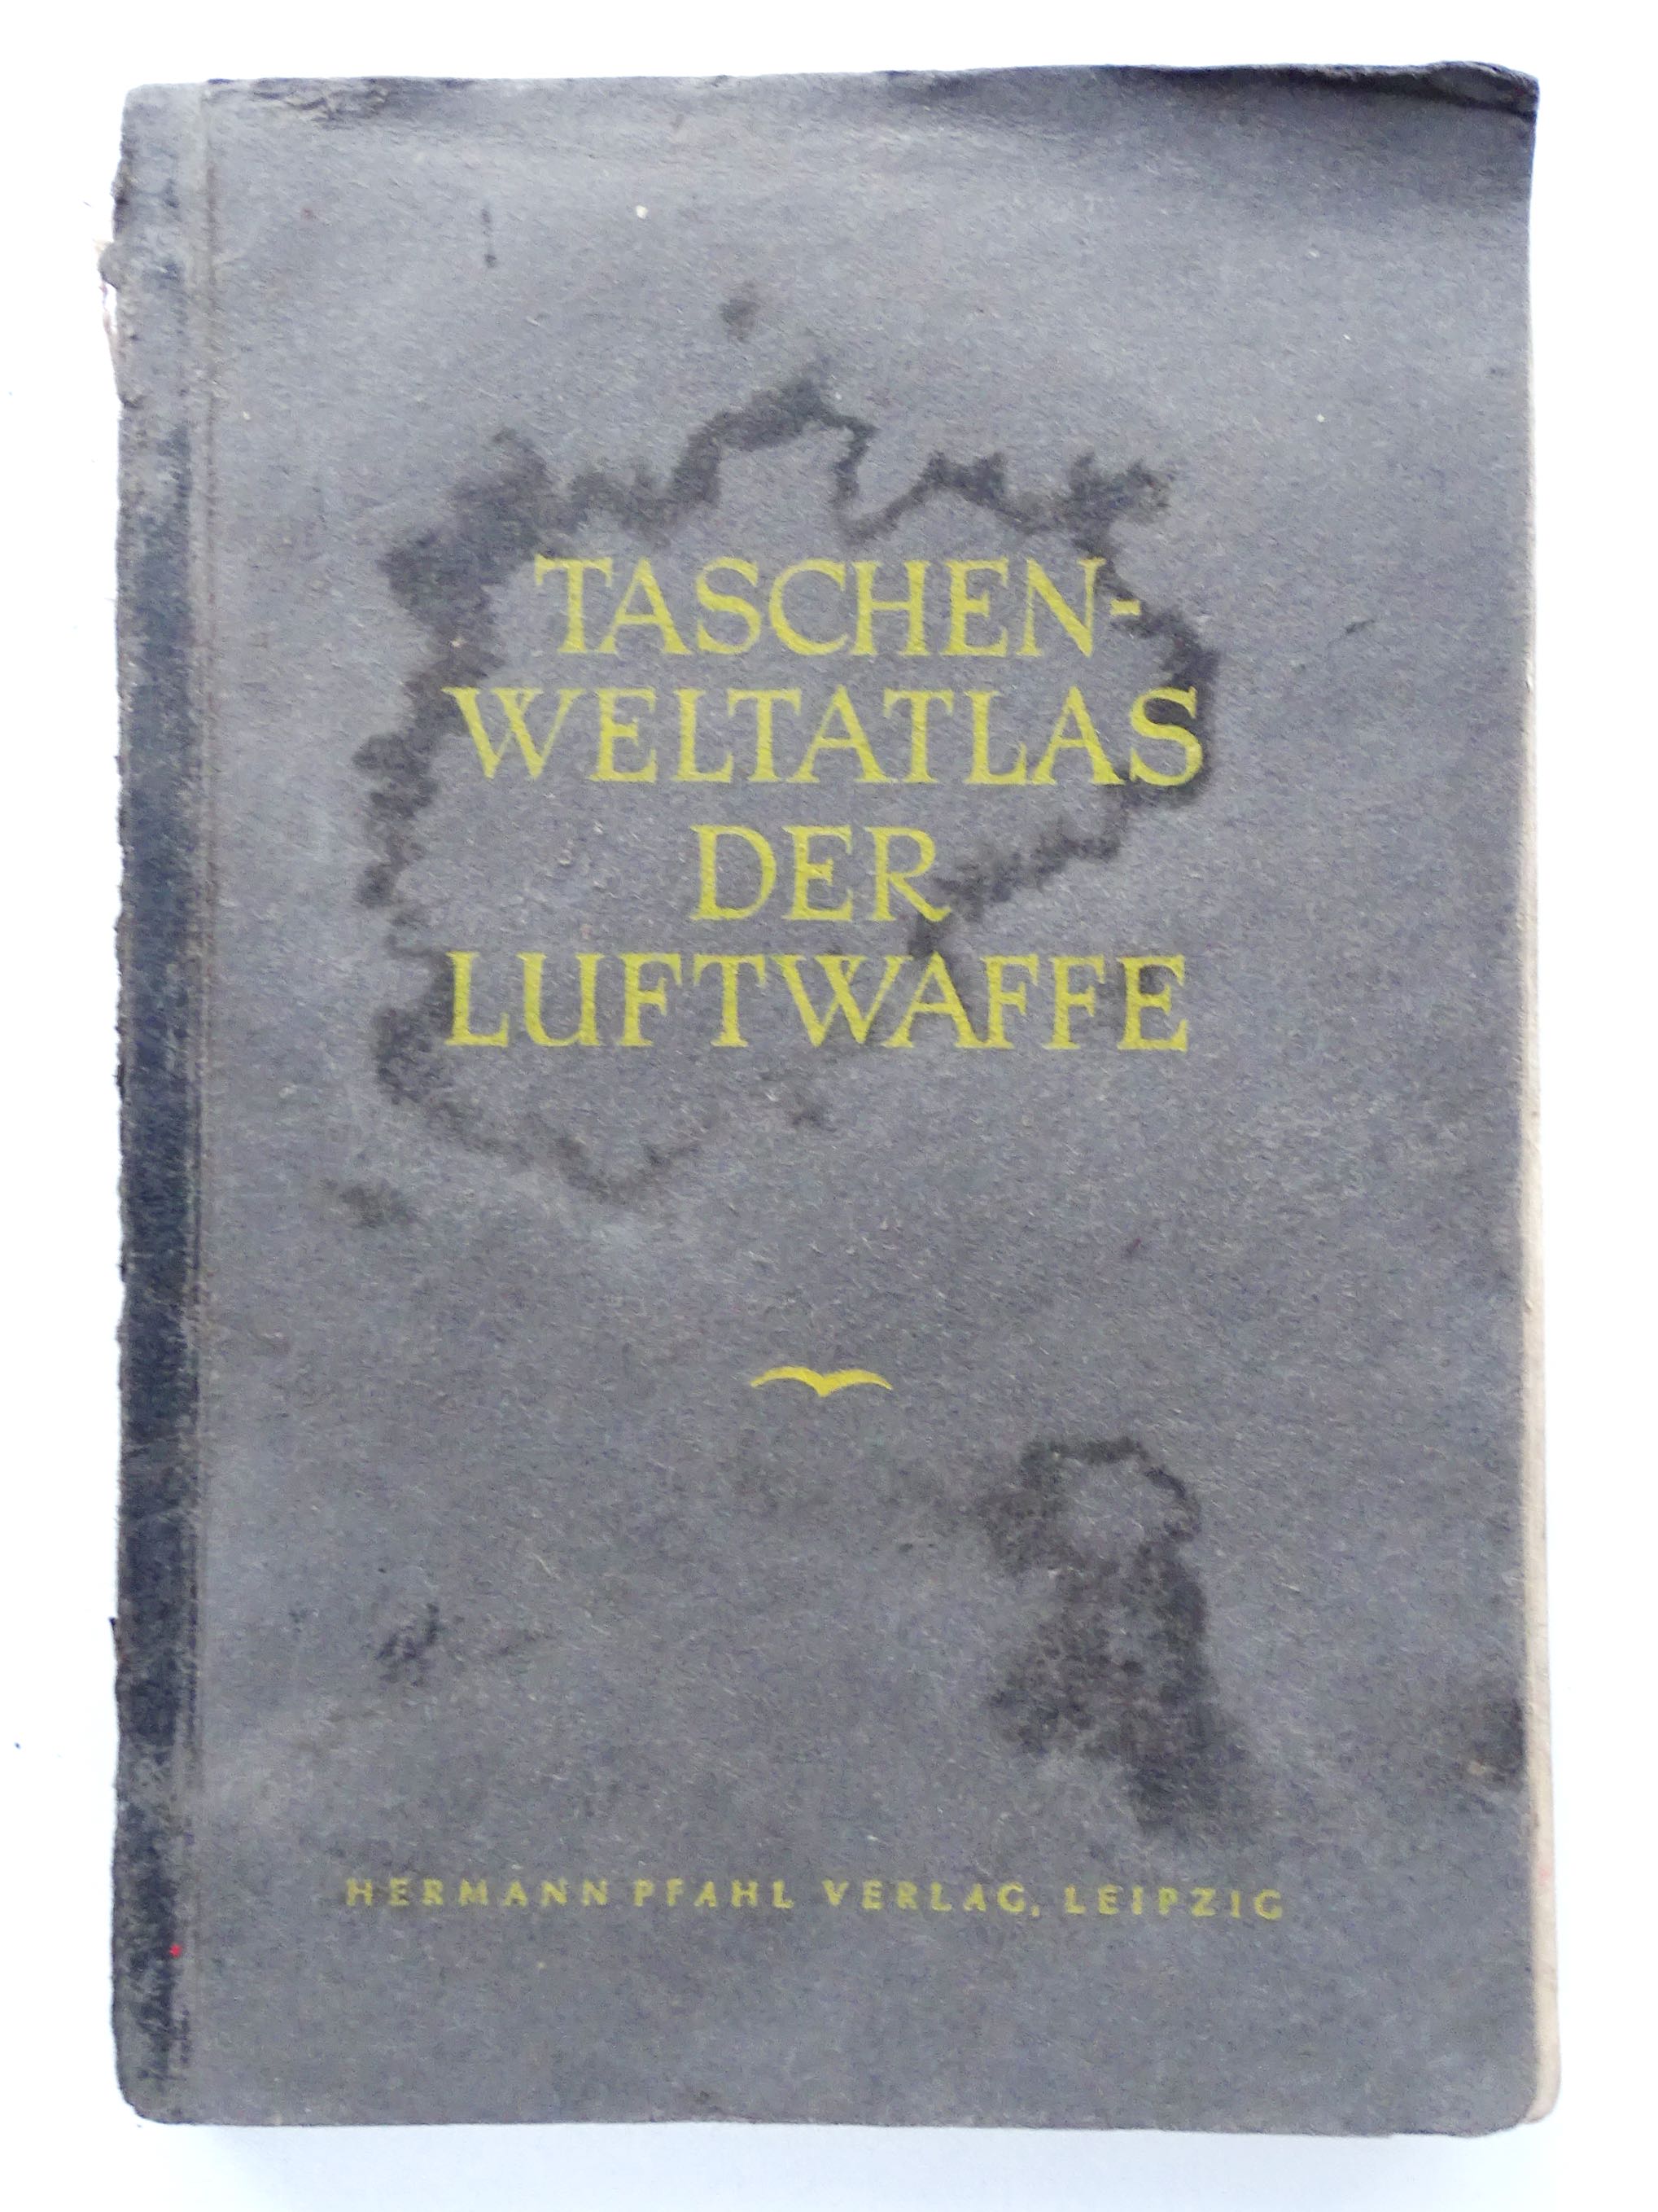 Taschen welt atlas der Luftwaffe 1942